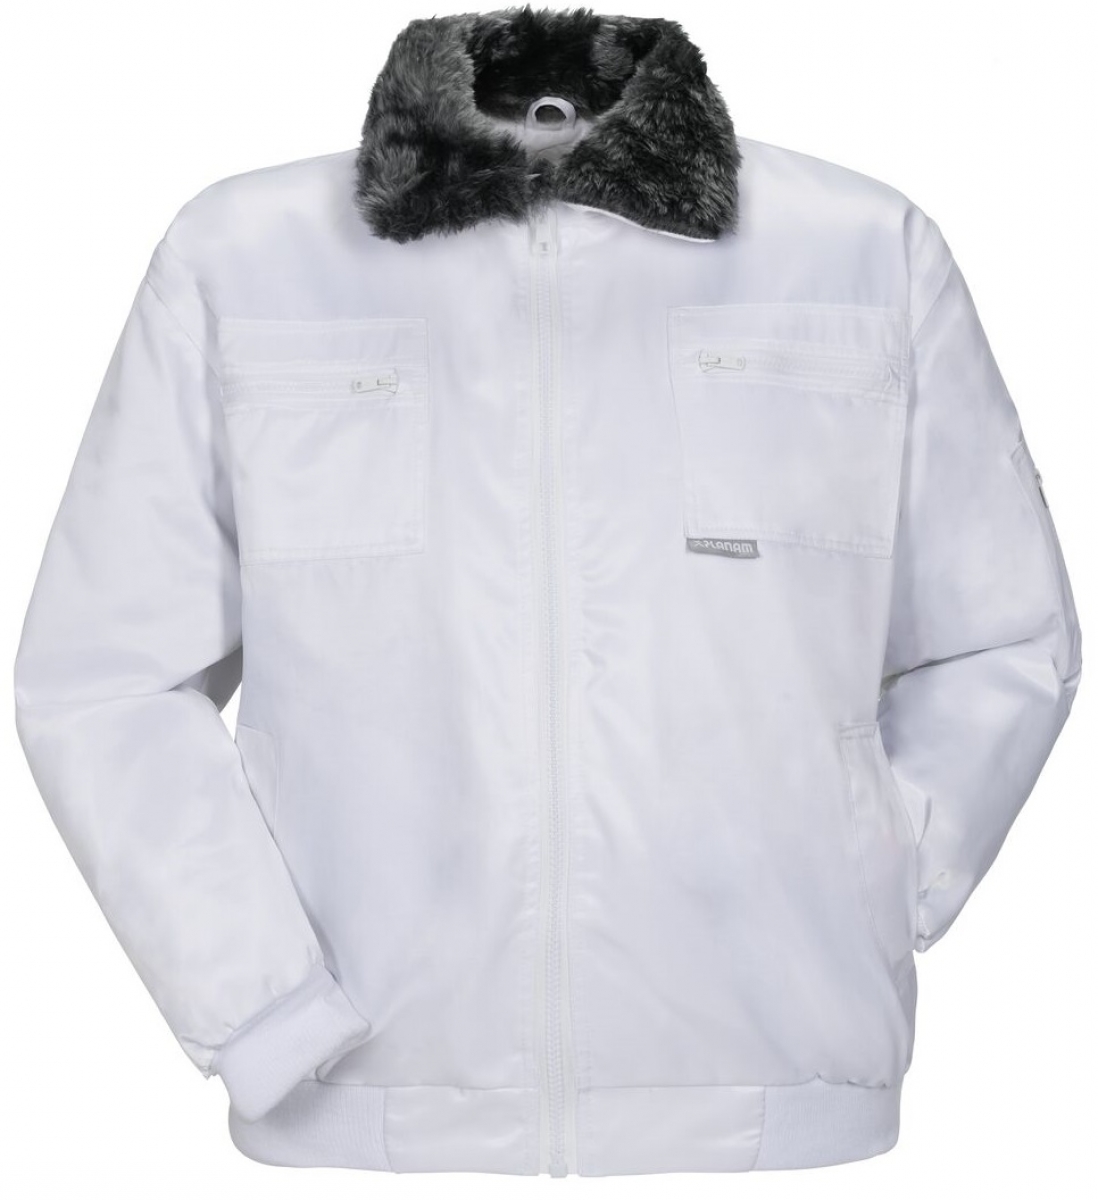 PLANAM-Workwear, Winter-Comfort-Jacke, Gletscher, weiss